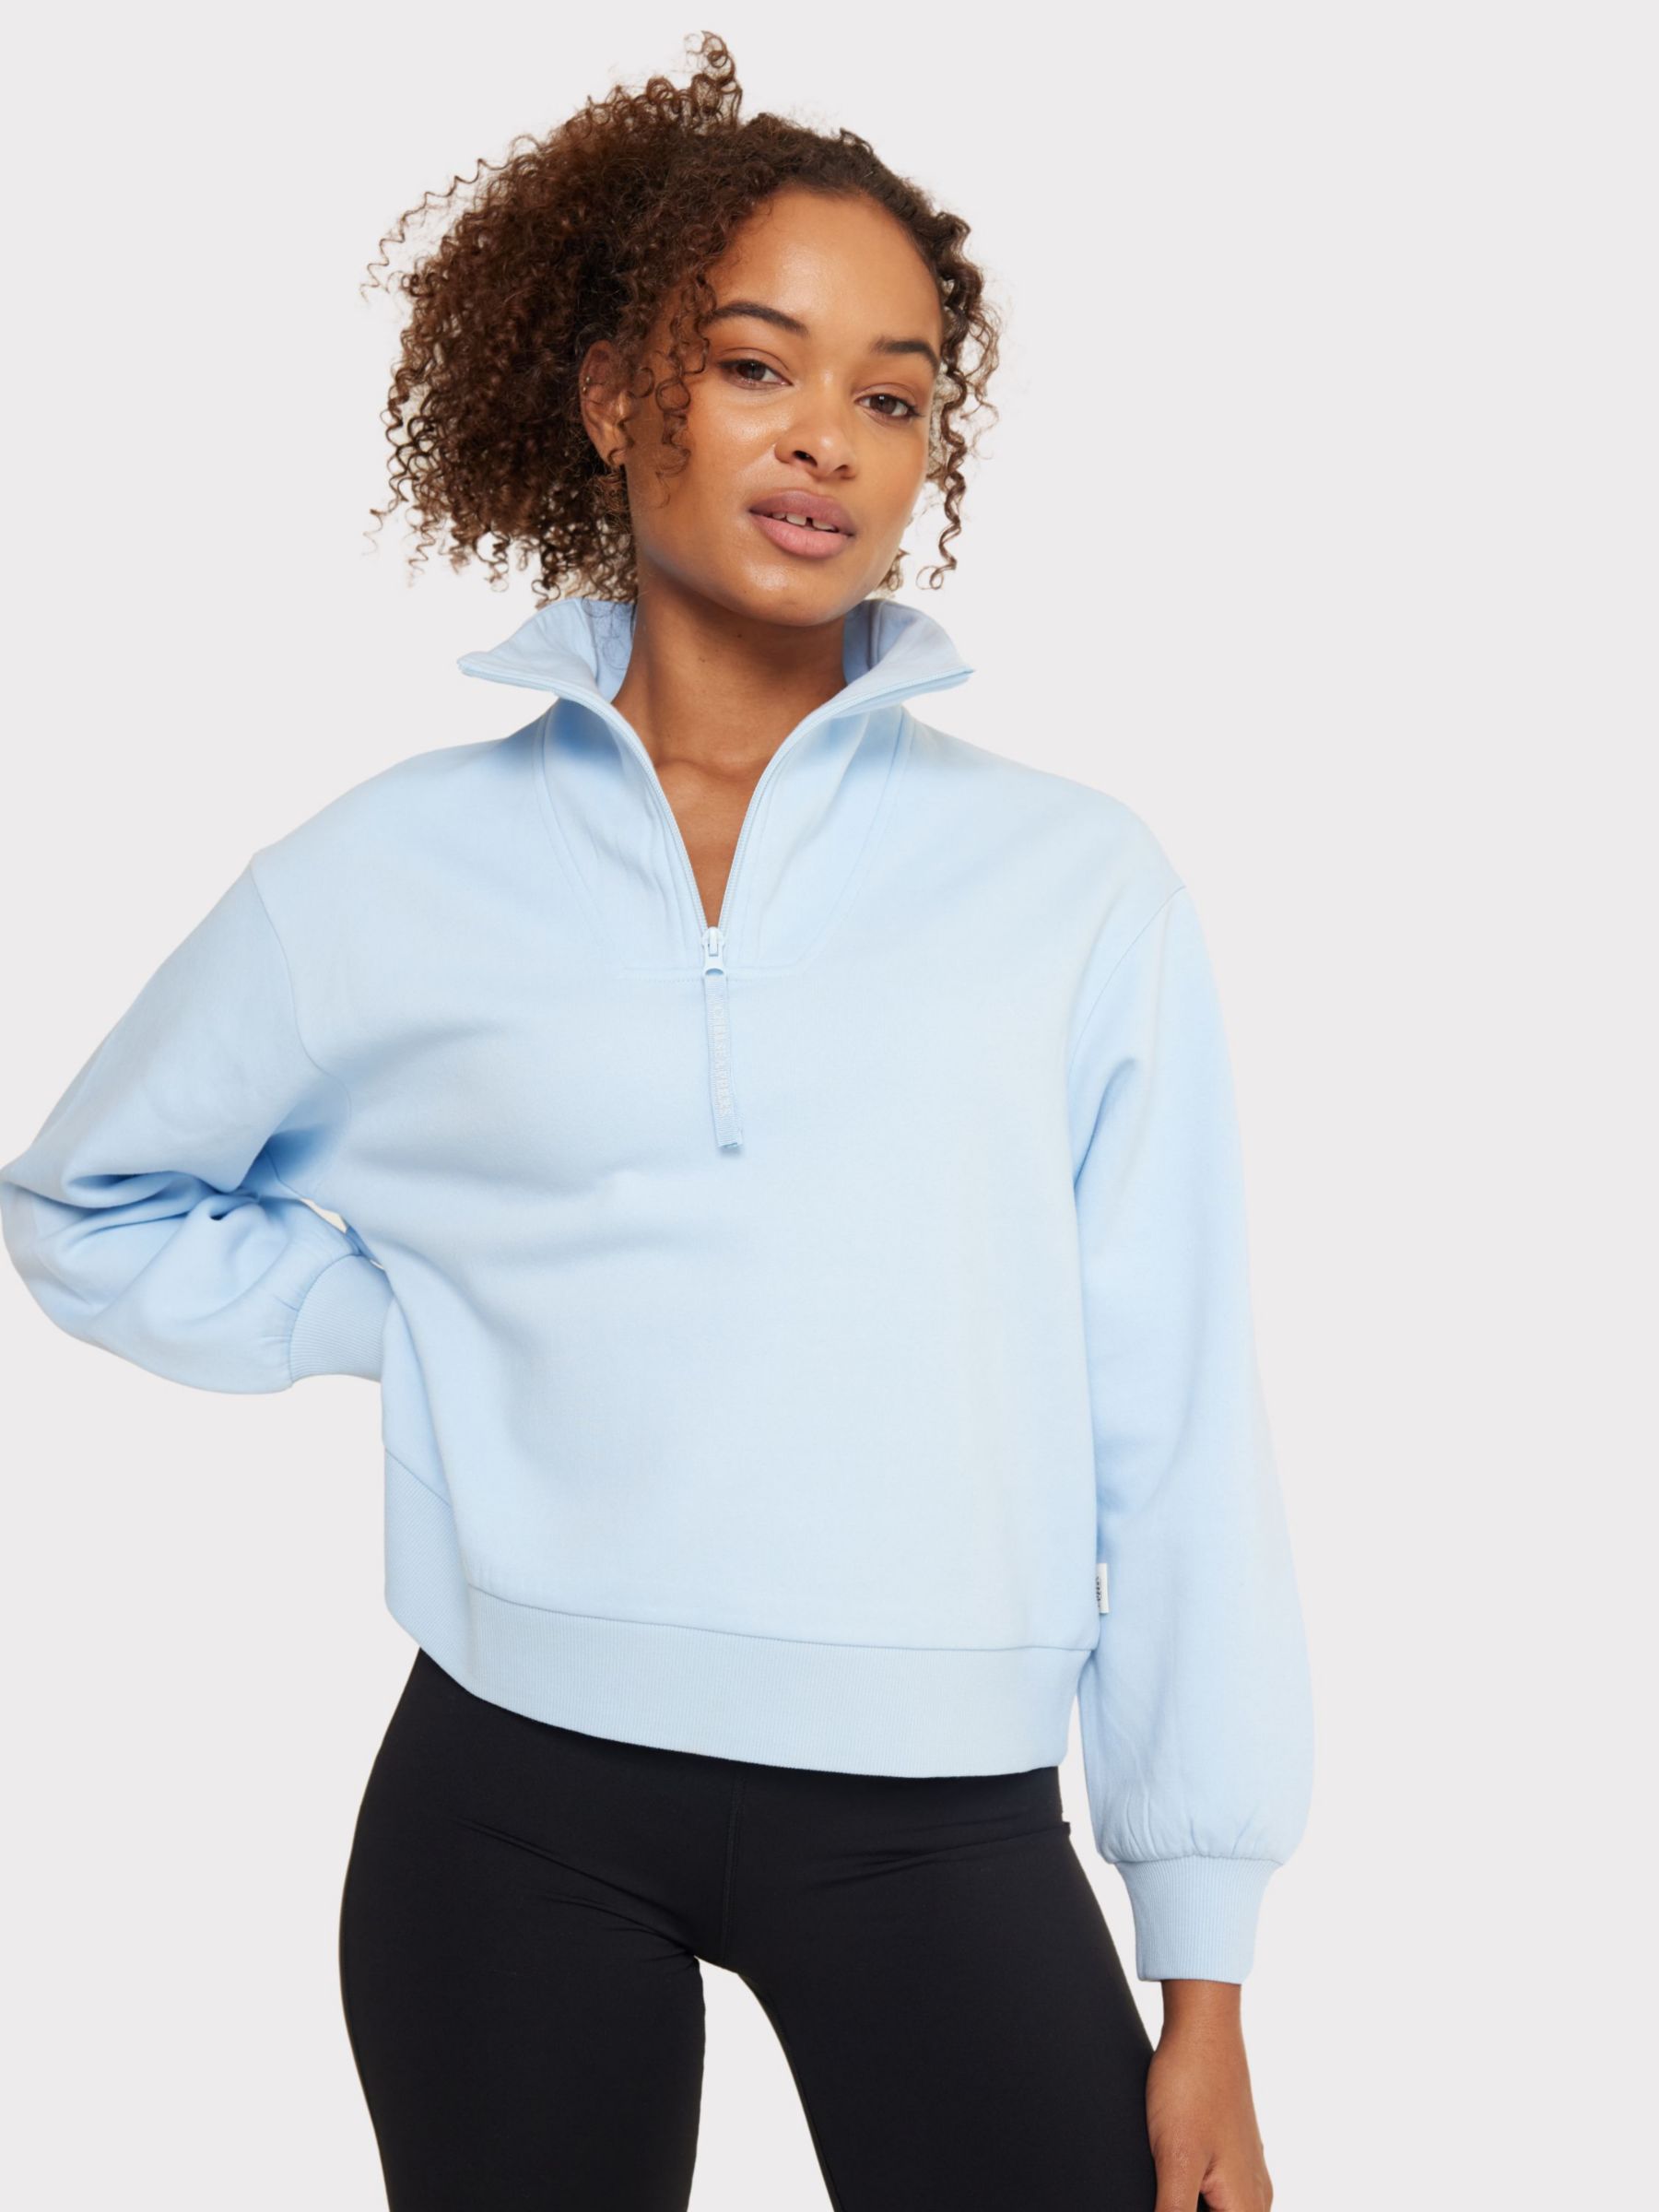 Women's Half Zip Sweatshirts